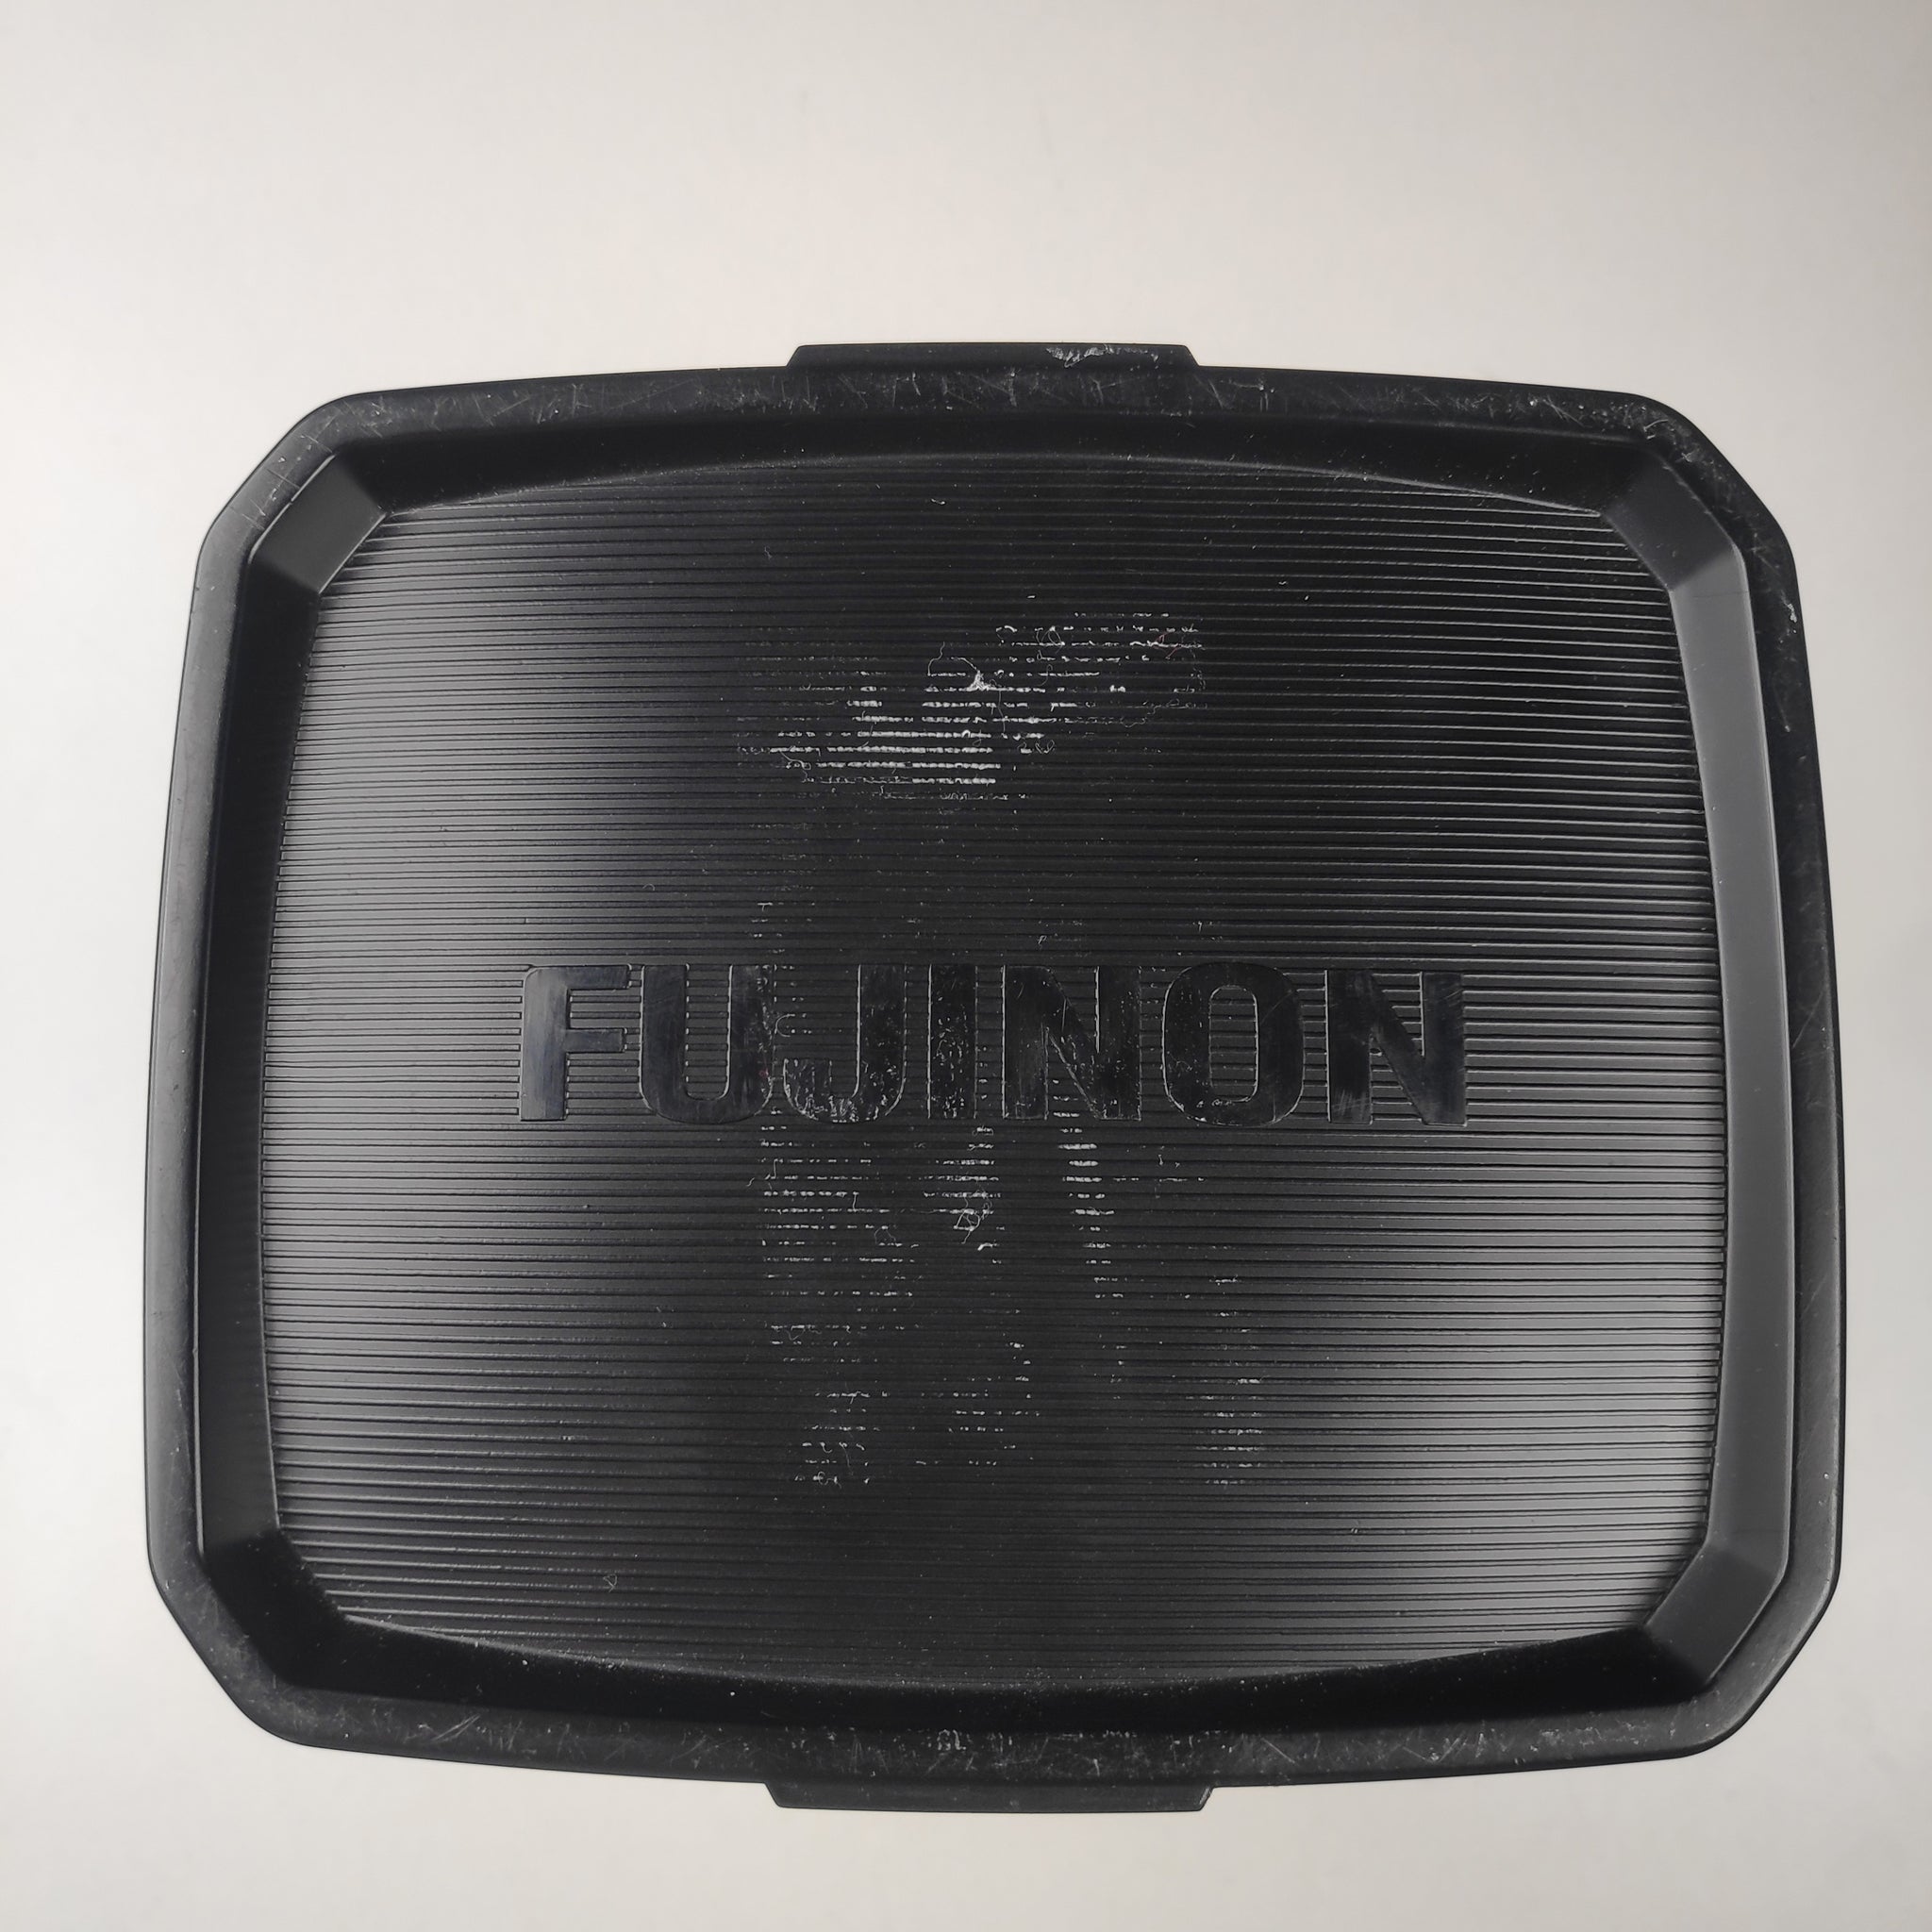 Fujinon HA14x4.5 BERD-S6B with Full-Servo Control Kit SS-15D-02 (23368)